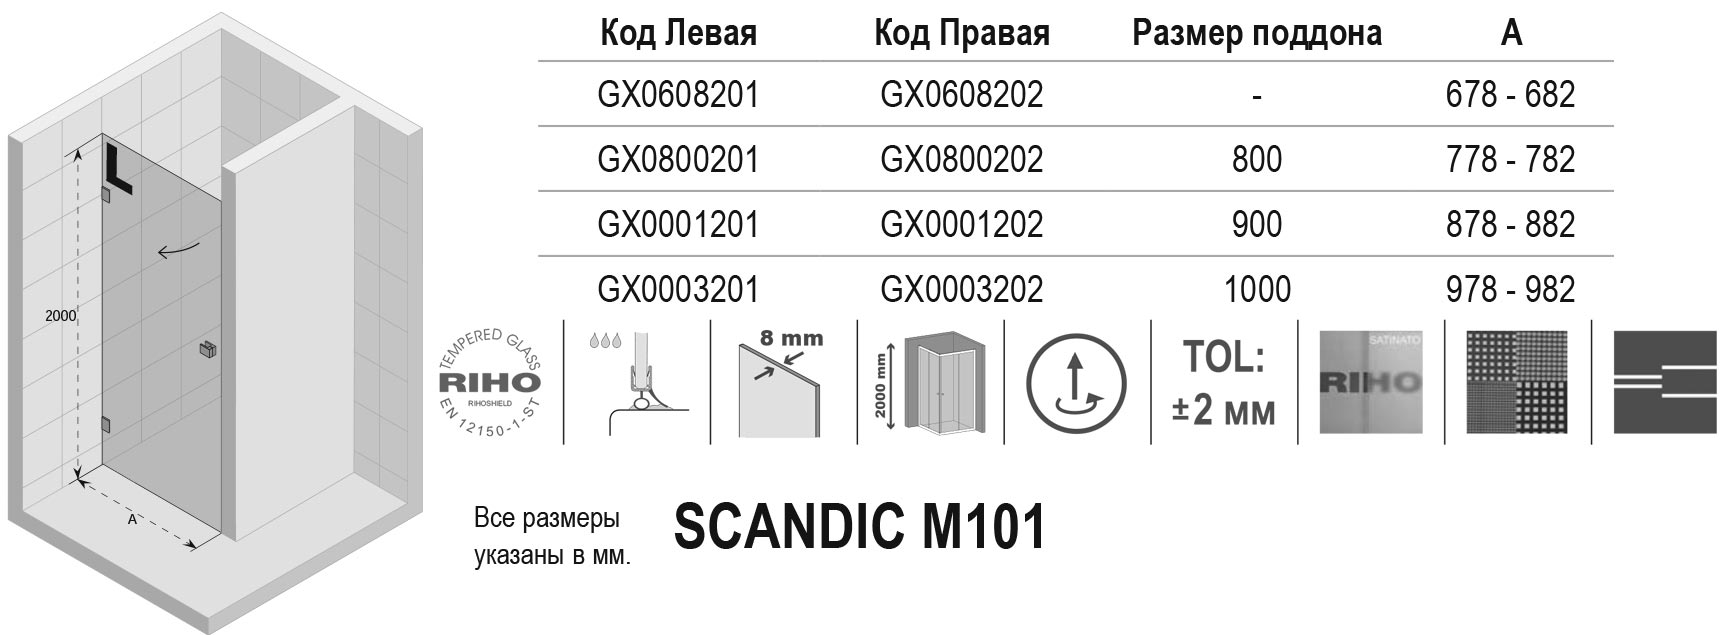 Чертёж Riho Scandic M101 GX0608201